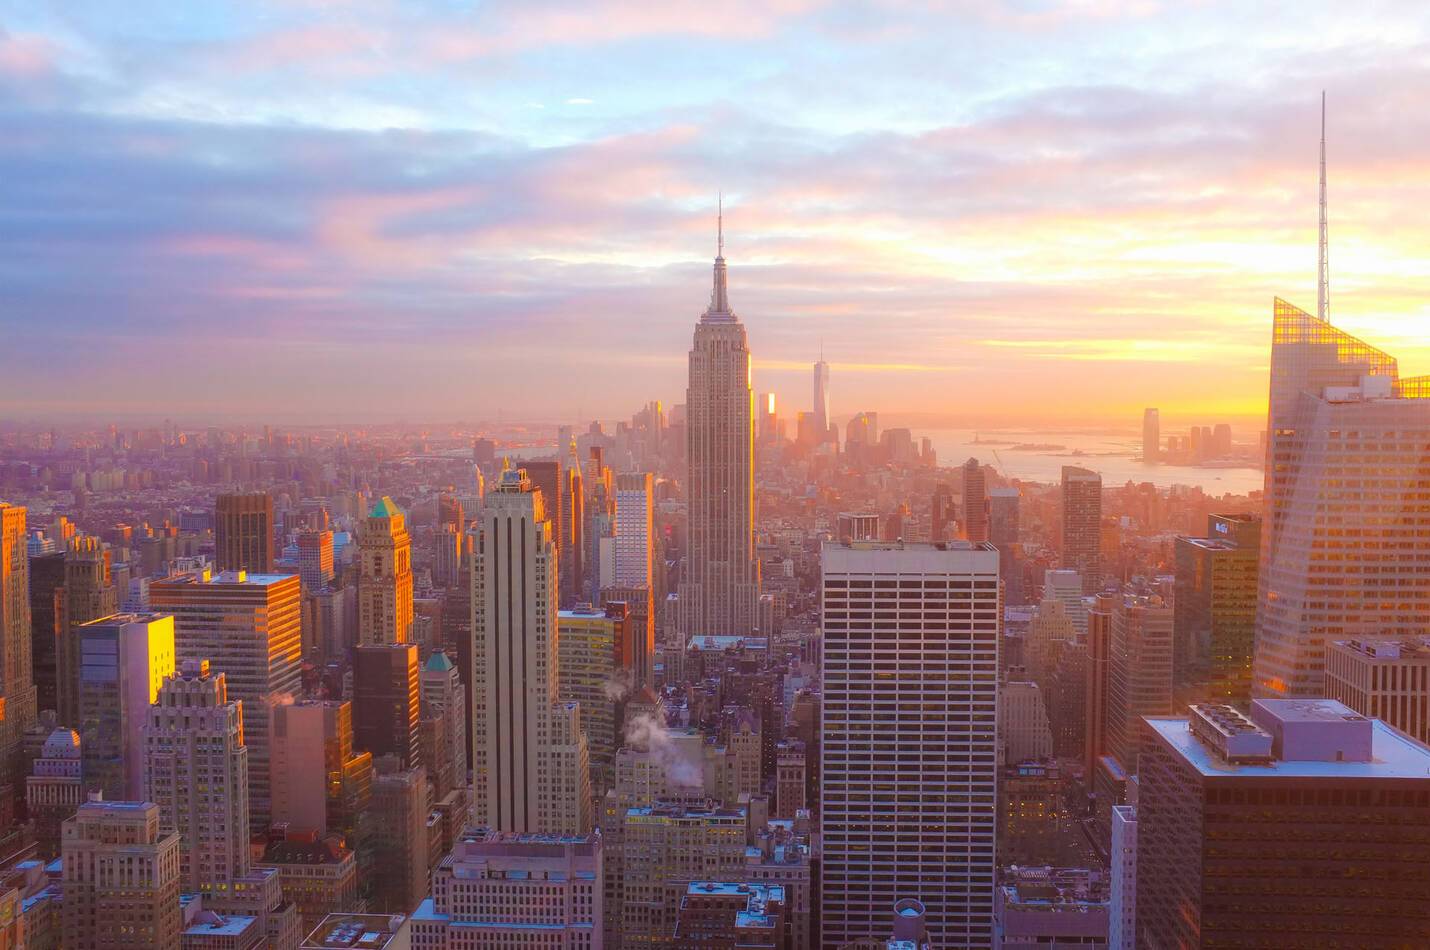 le lever de soleil en haut de l'Empire State Building